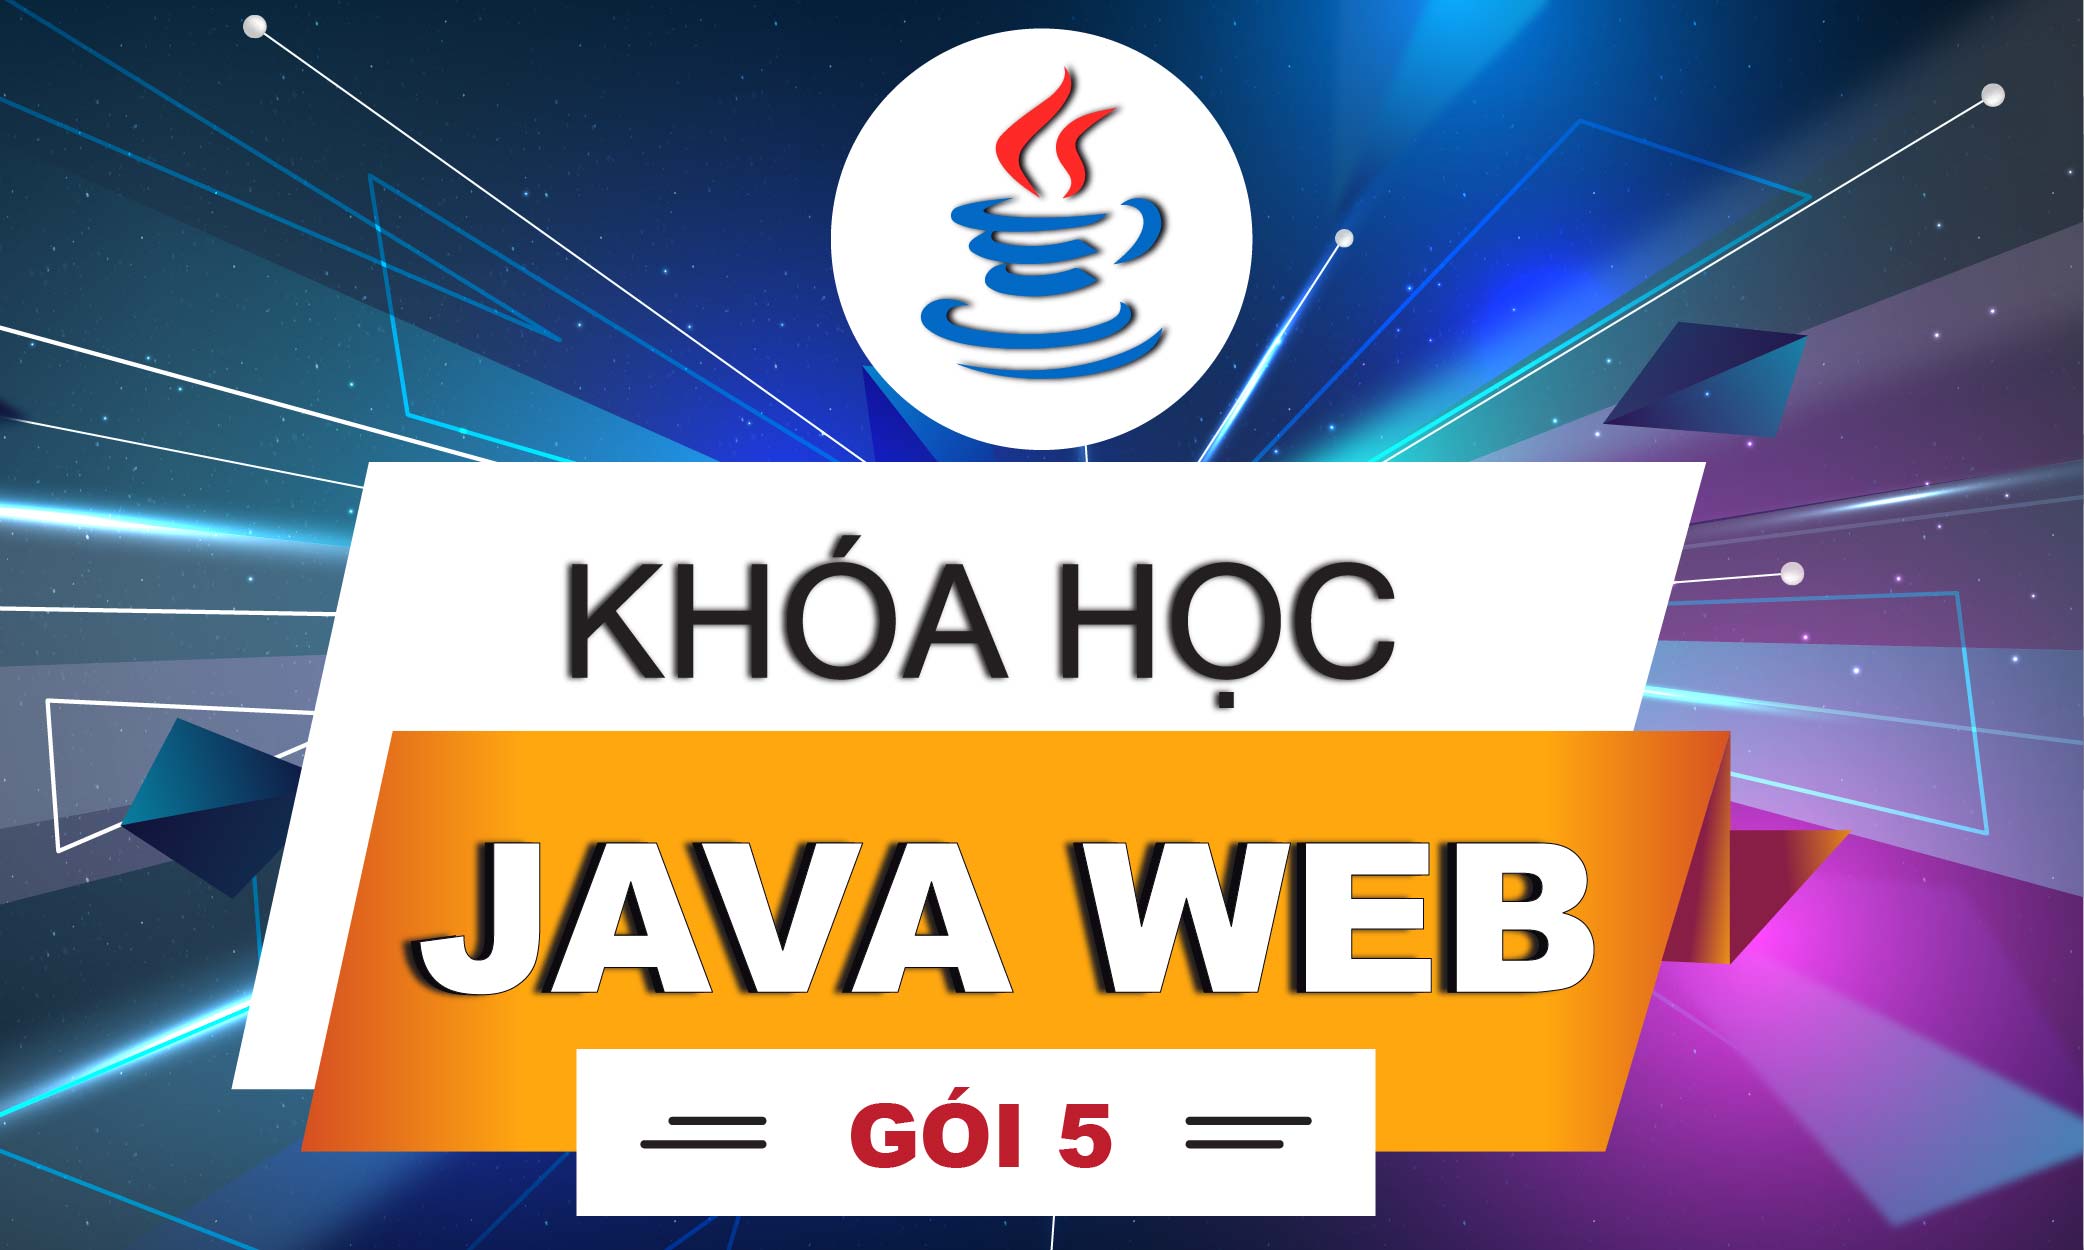 Khóa học java web gói 5 (combo 3 khóa java core, java web và java hosting)